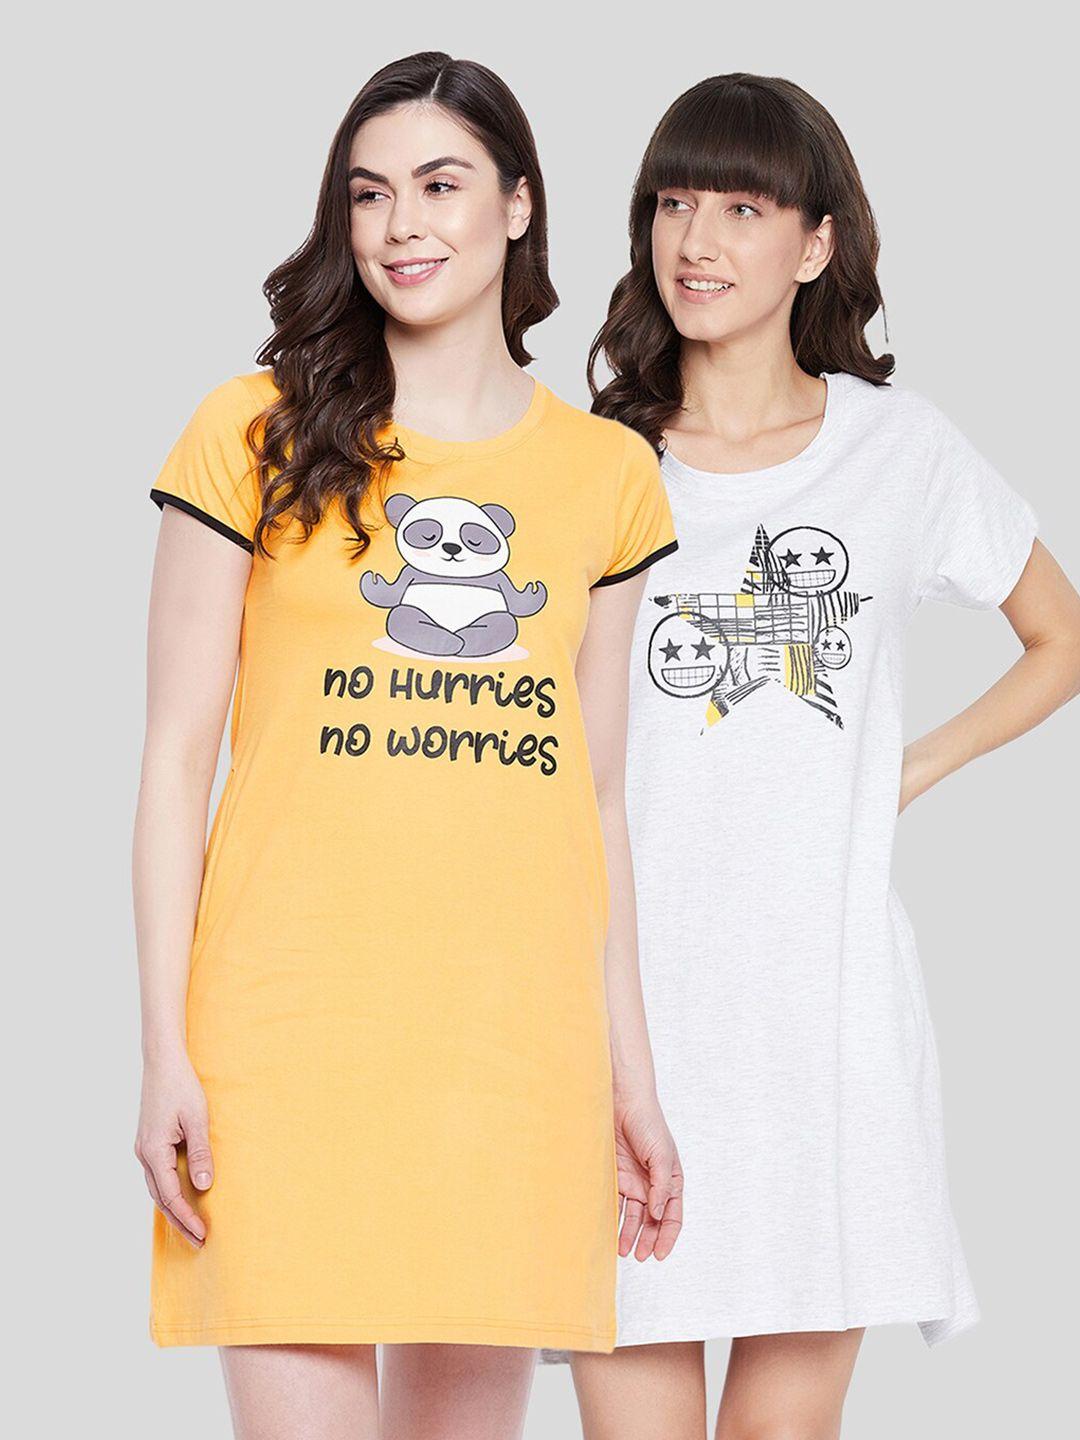 clovia women pack of 2 white & yellow printed cotton tshirt nightdress